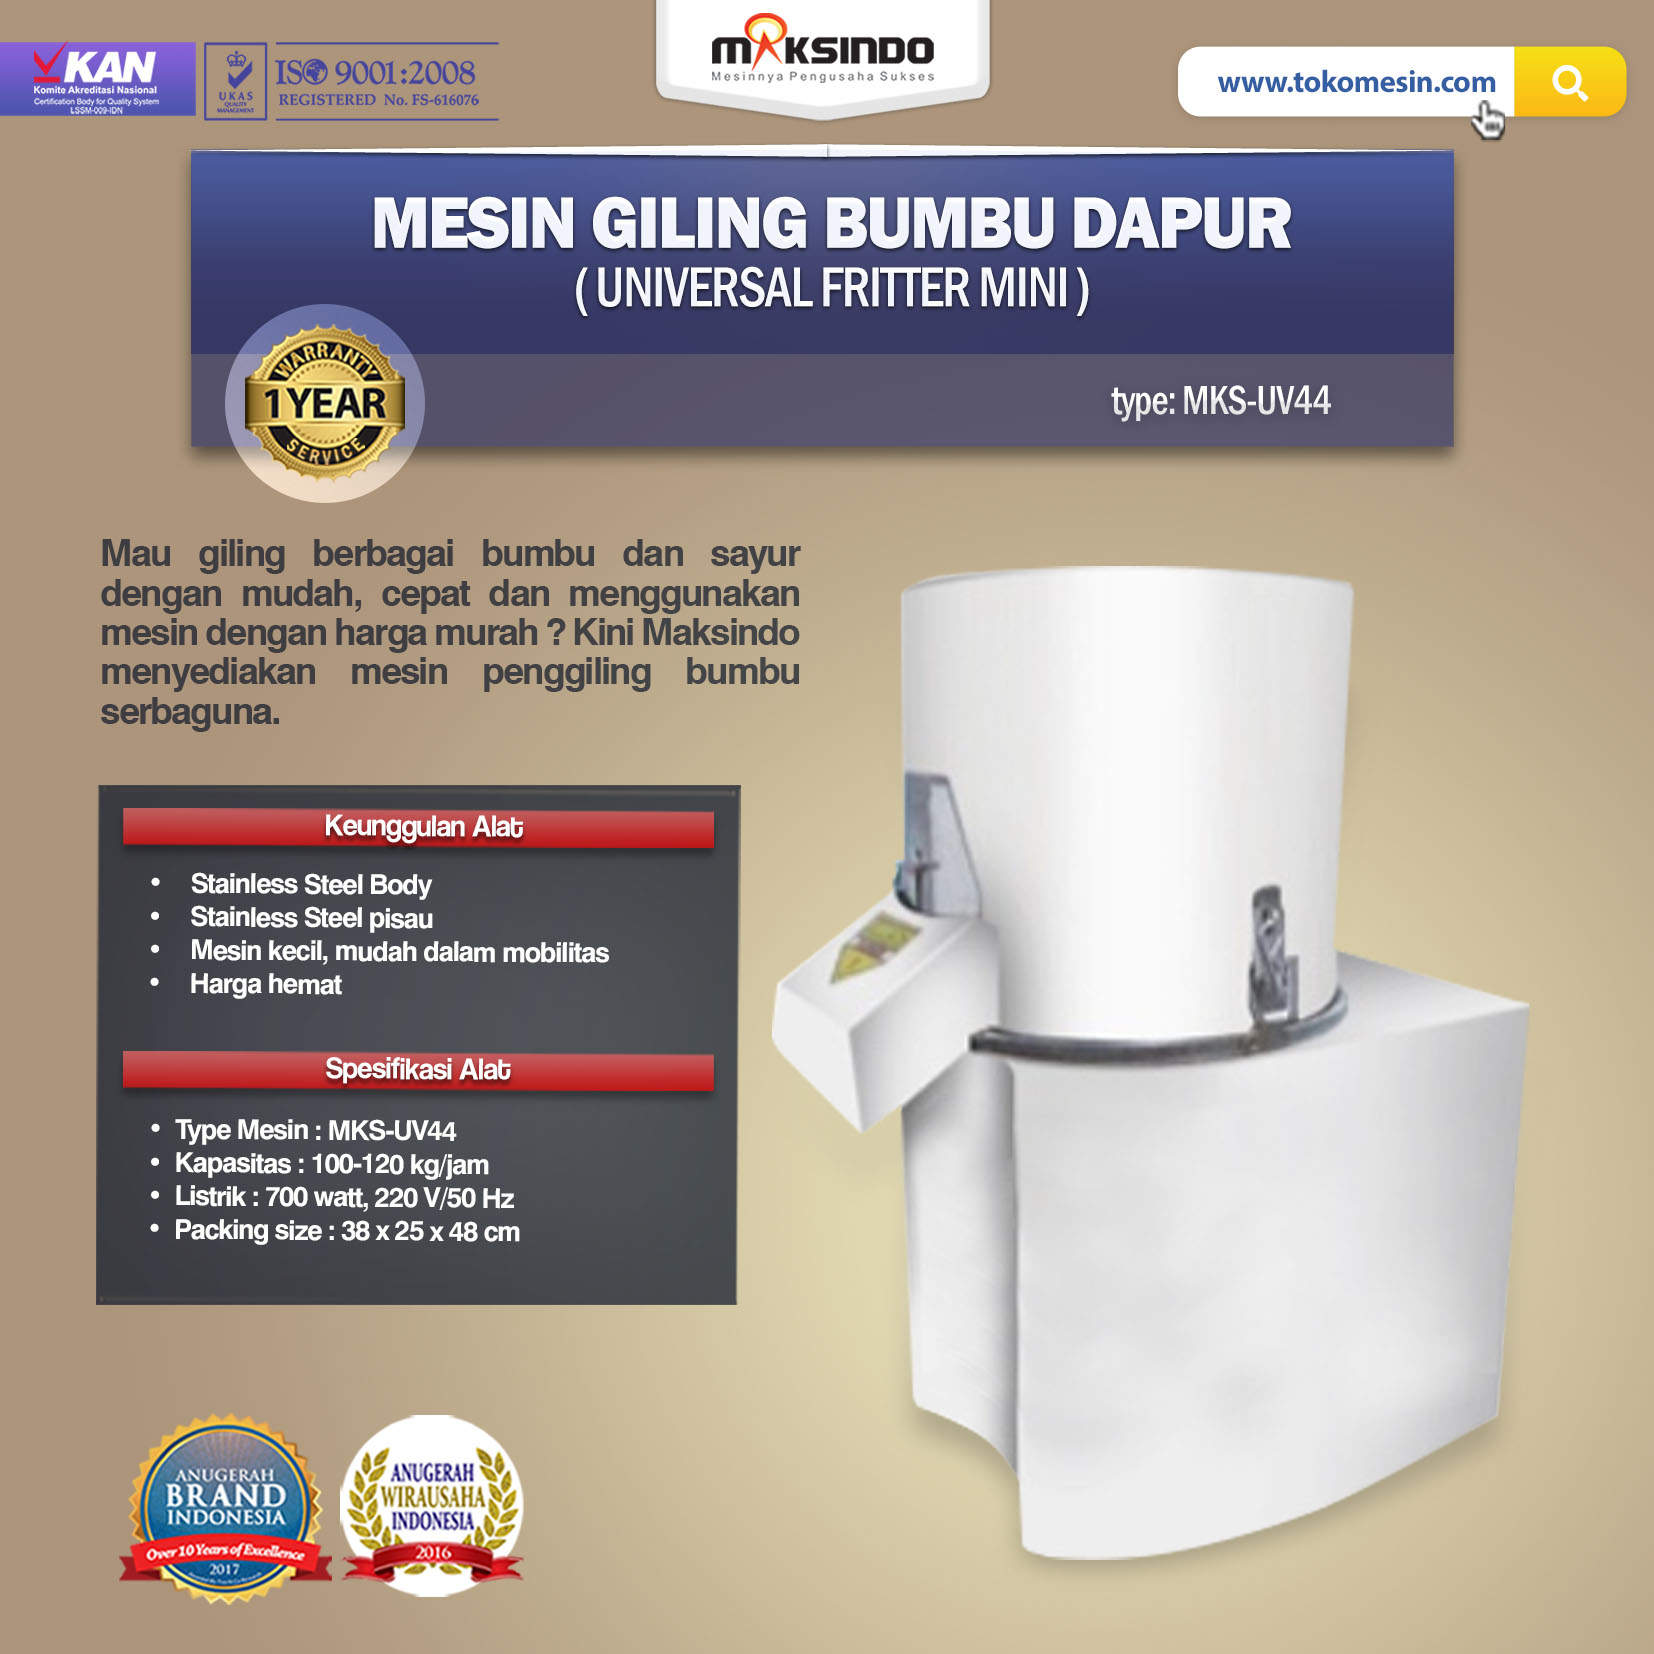 Jual Mesin Giling Bumbu Dapur (Universal Fritter Mini) MKS-UV44 di Tangerang